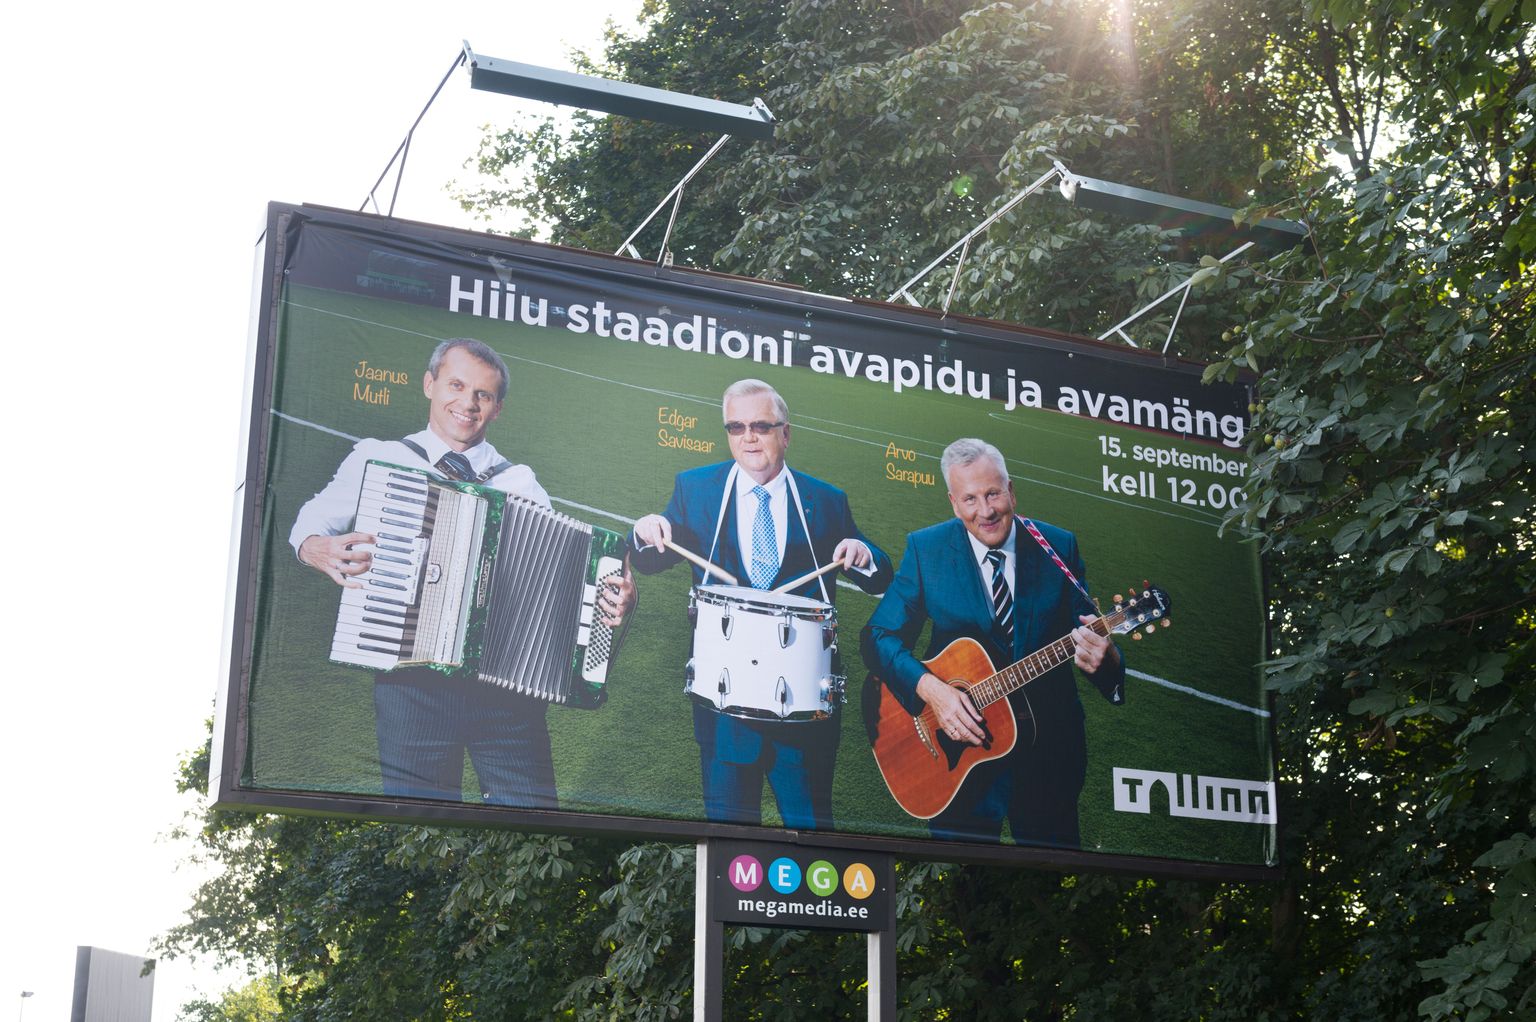 Hiiu staadioni avamise reklaamil figureerisid 2013. aastal Jaanus Mutli, Edgar Savisaar ja Arvo Sarapuu. ERJK leidis, et poliitikud kasutasid linna raha valimisreklaamiks.